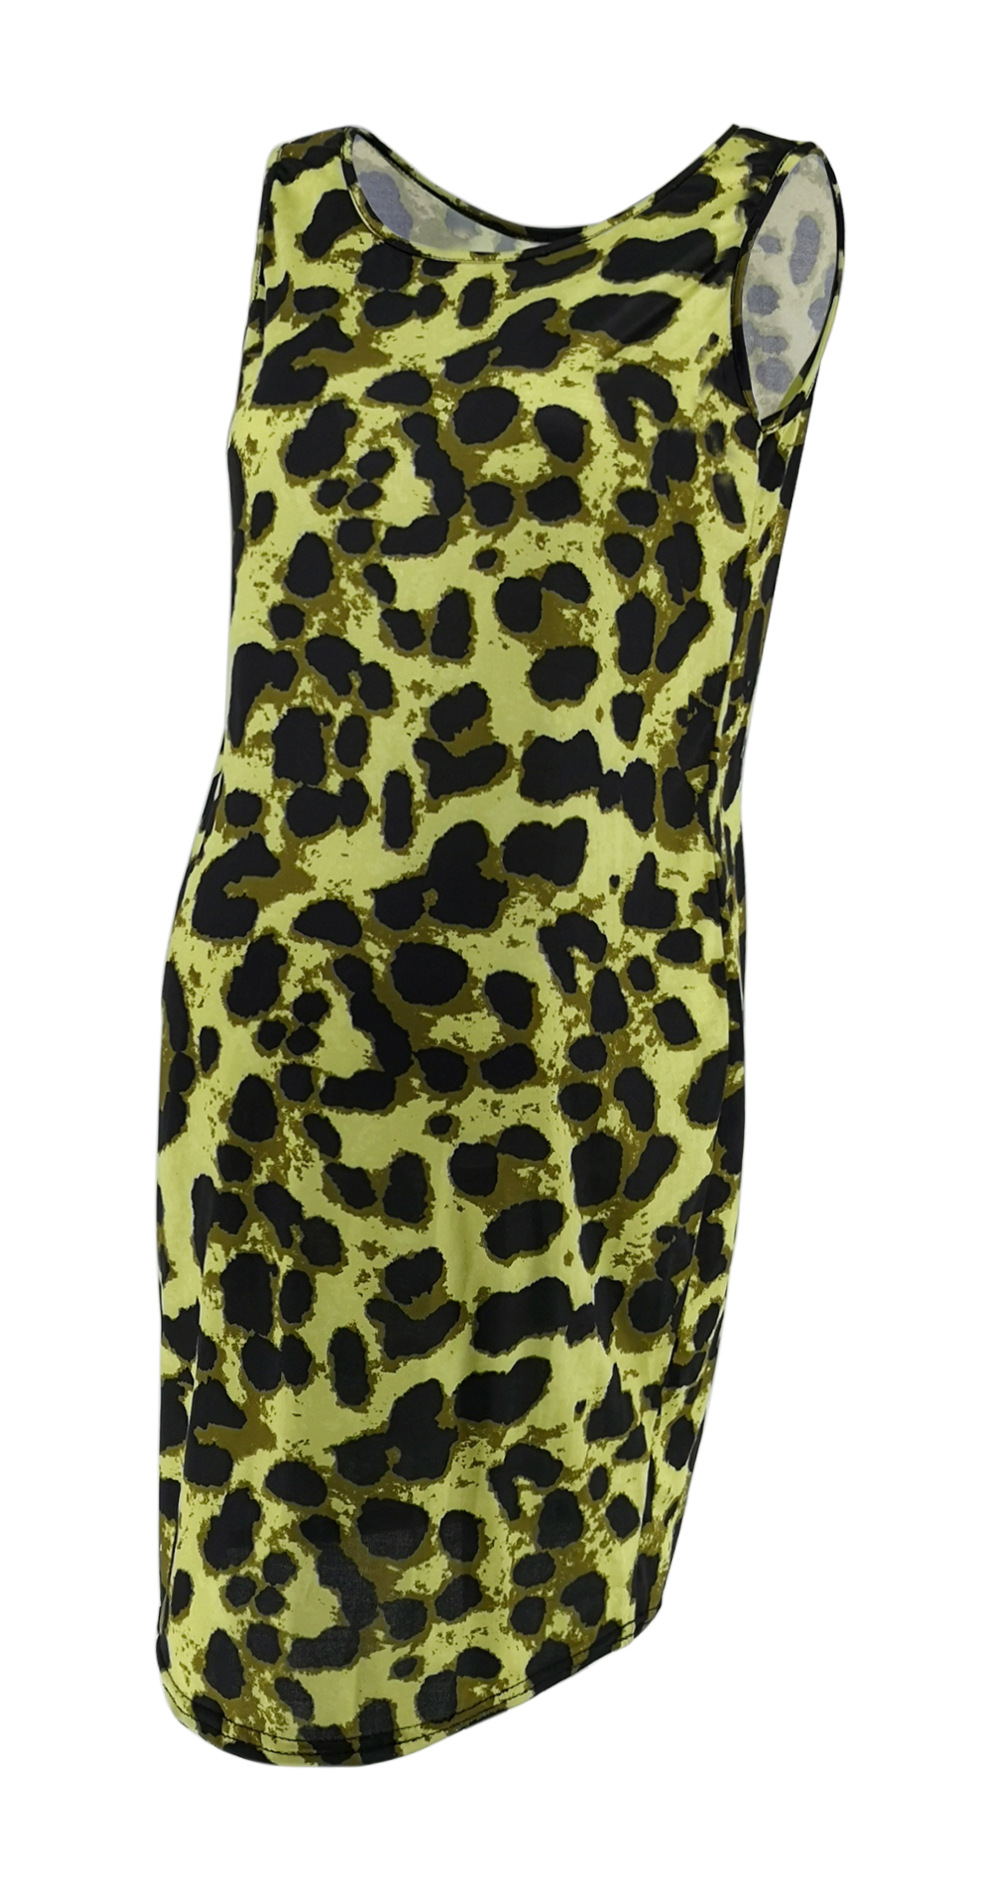 Leopard Dress Summer Sleeveless Pregnant Women